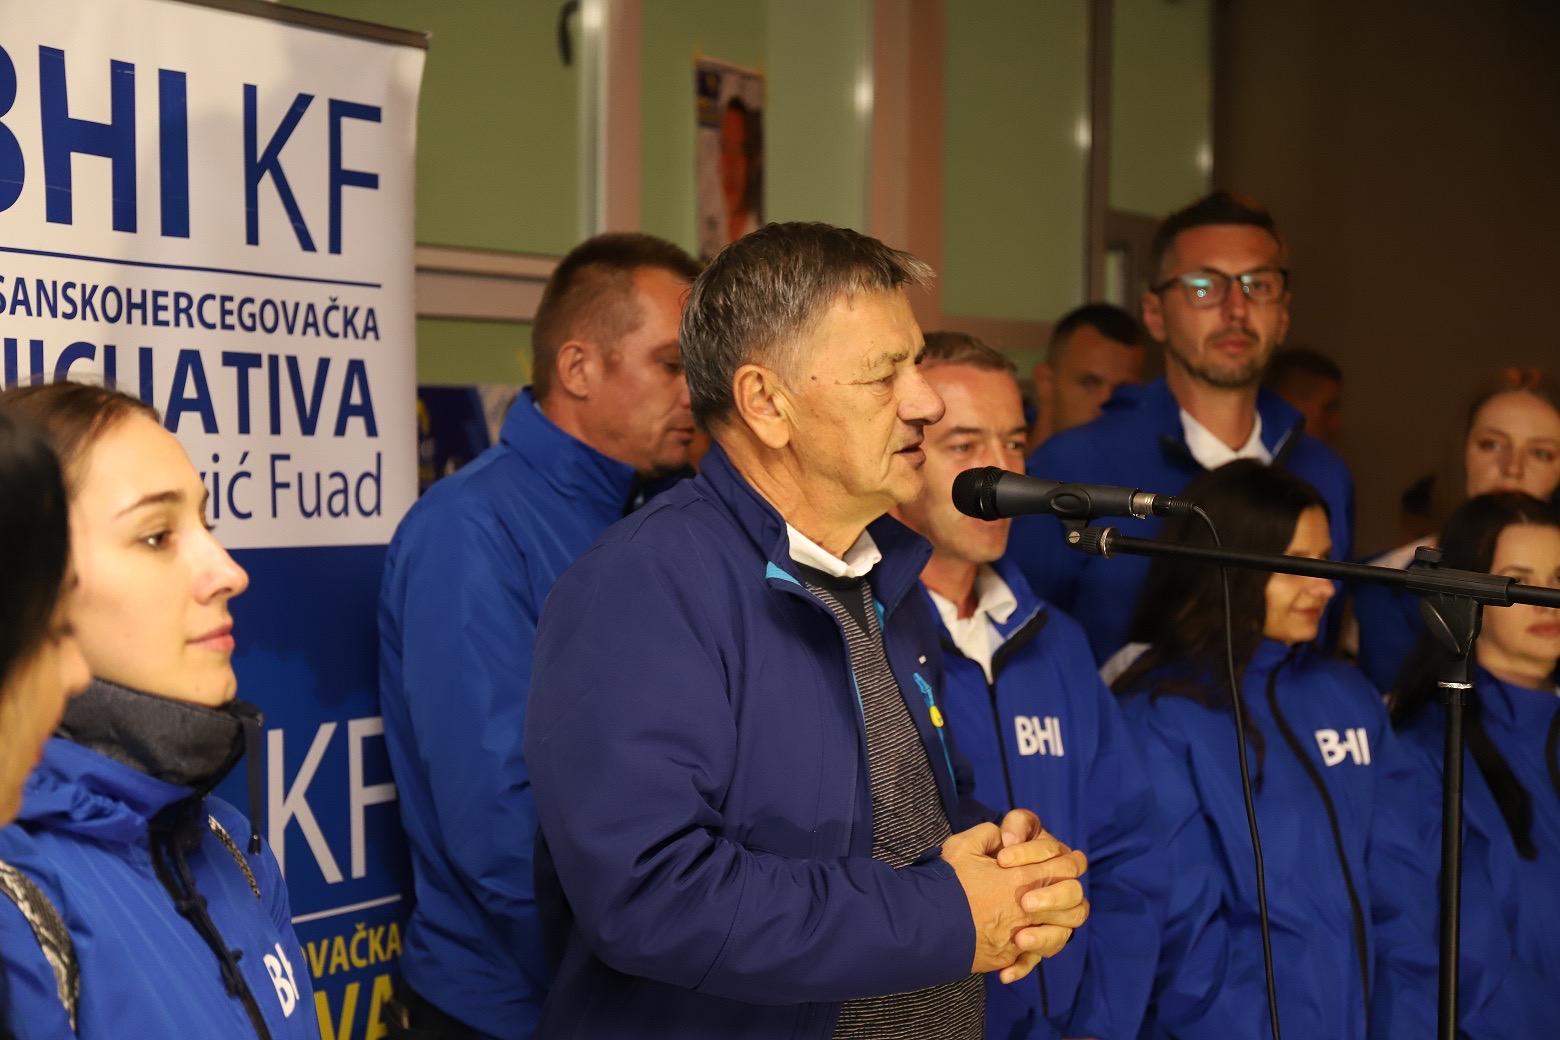 Velika podrška Kasumoviću i BHI KF u Radinovićima, Hrastovcu i Brnjicu